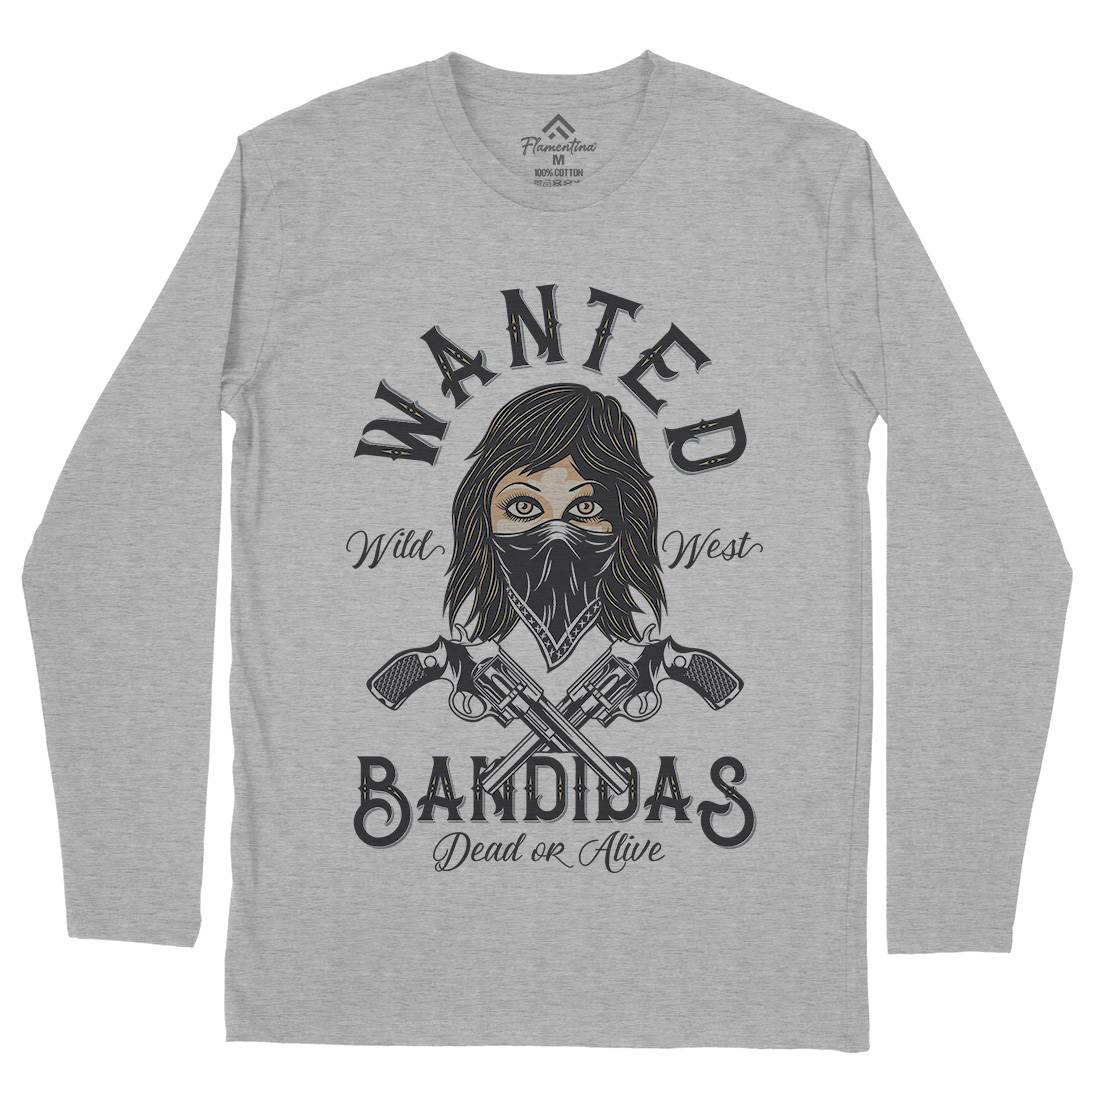 Wanted Bandidas Mens Long Sleeve T-Shirt Retro D995